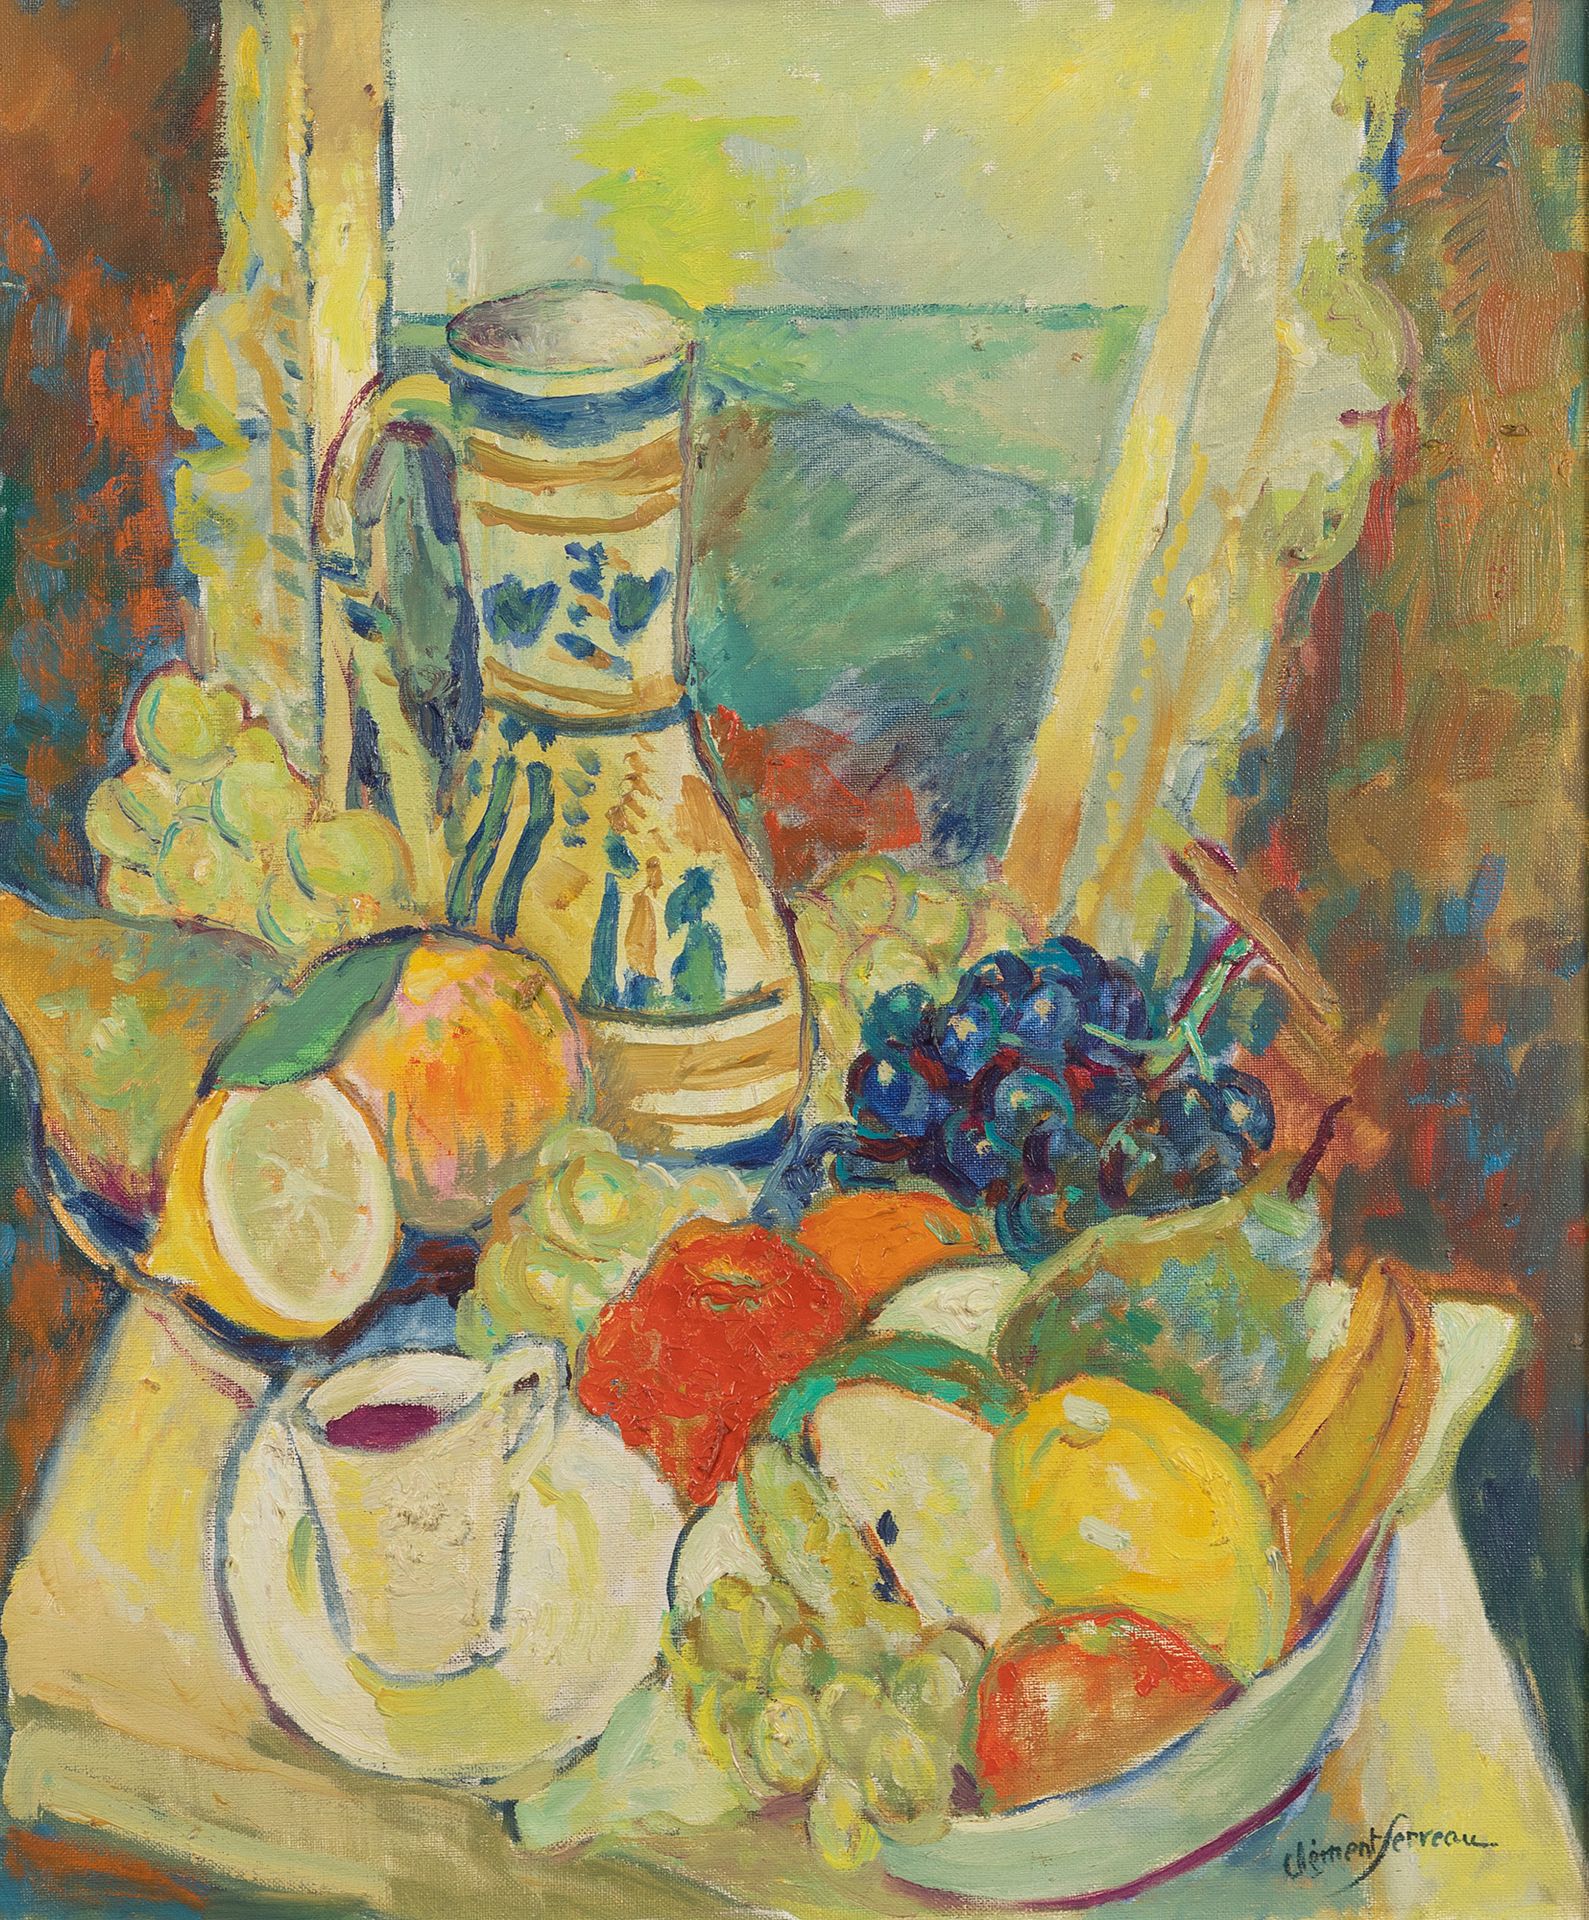 Null 克雷芒-塞尔维奥 (1886-1972)

静物与投手

布面油画

右下方有签名

55 x 46 厘米